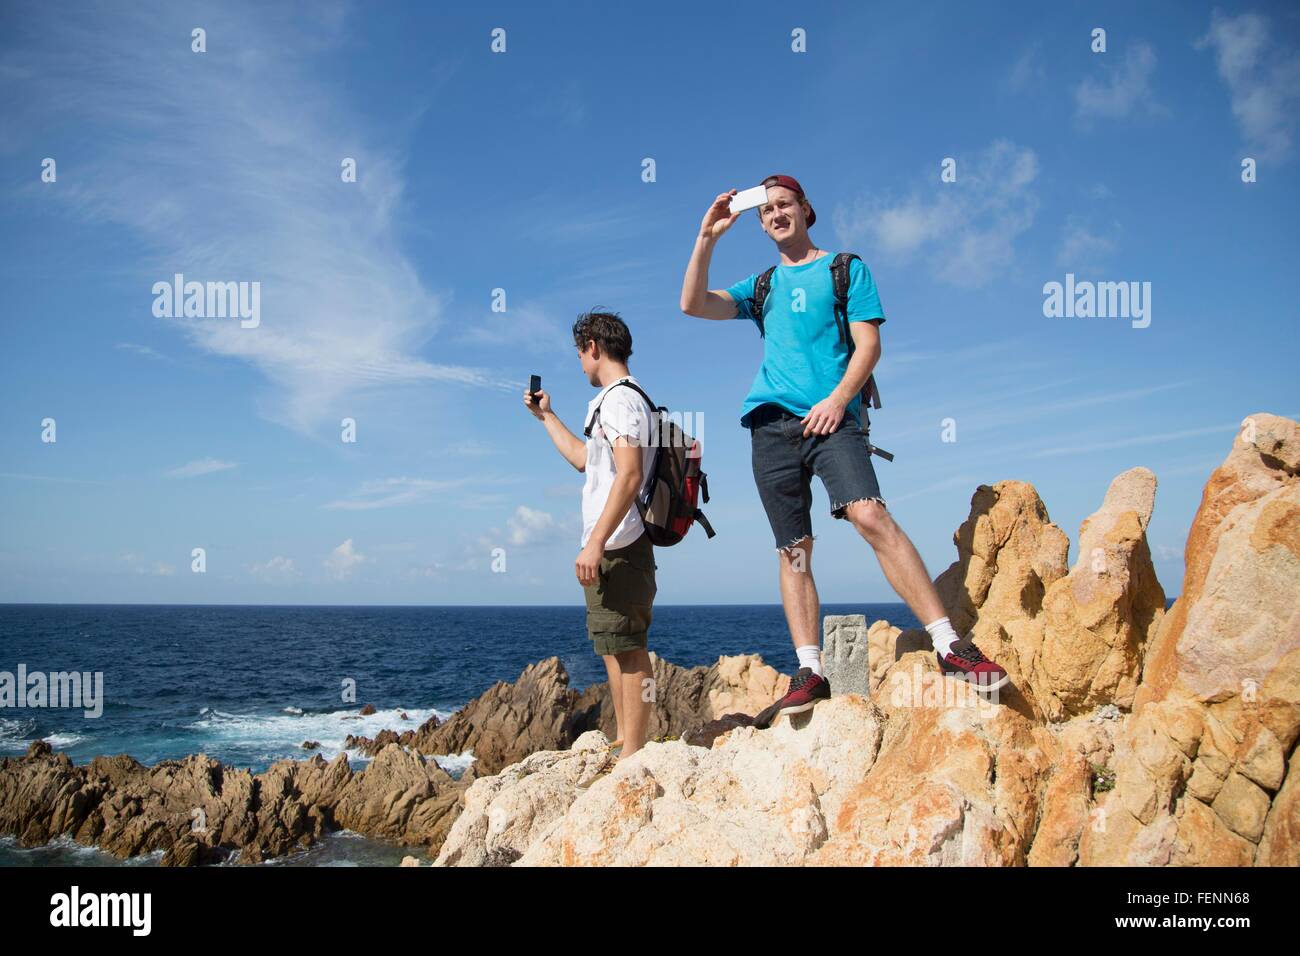 Junge Männer stehen auf Felsen mit Smartphone zu fotografieren, Costa Paradiso, Sardinien, Italien Stockfoto